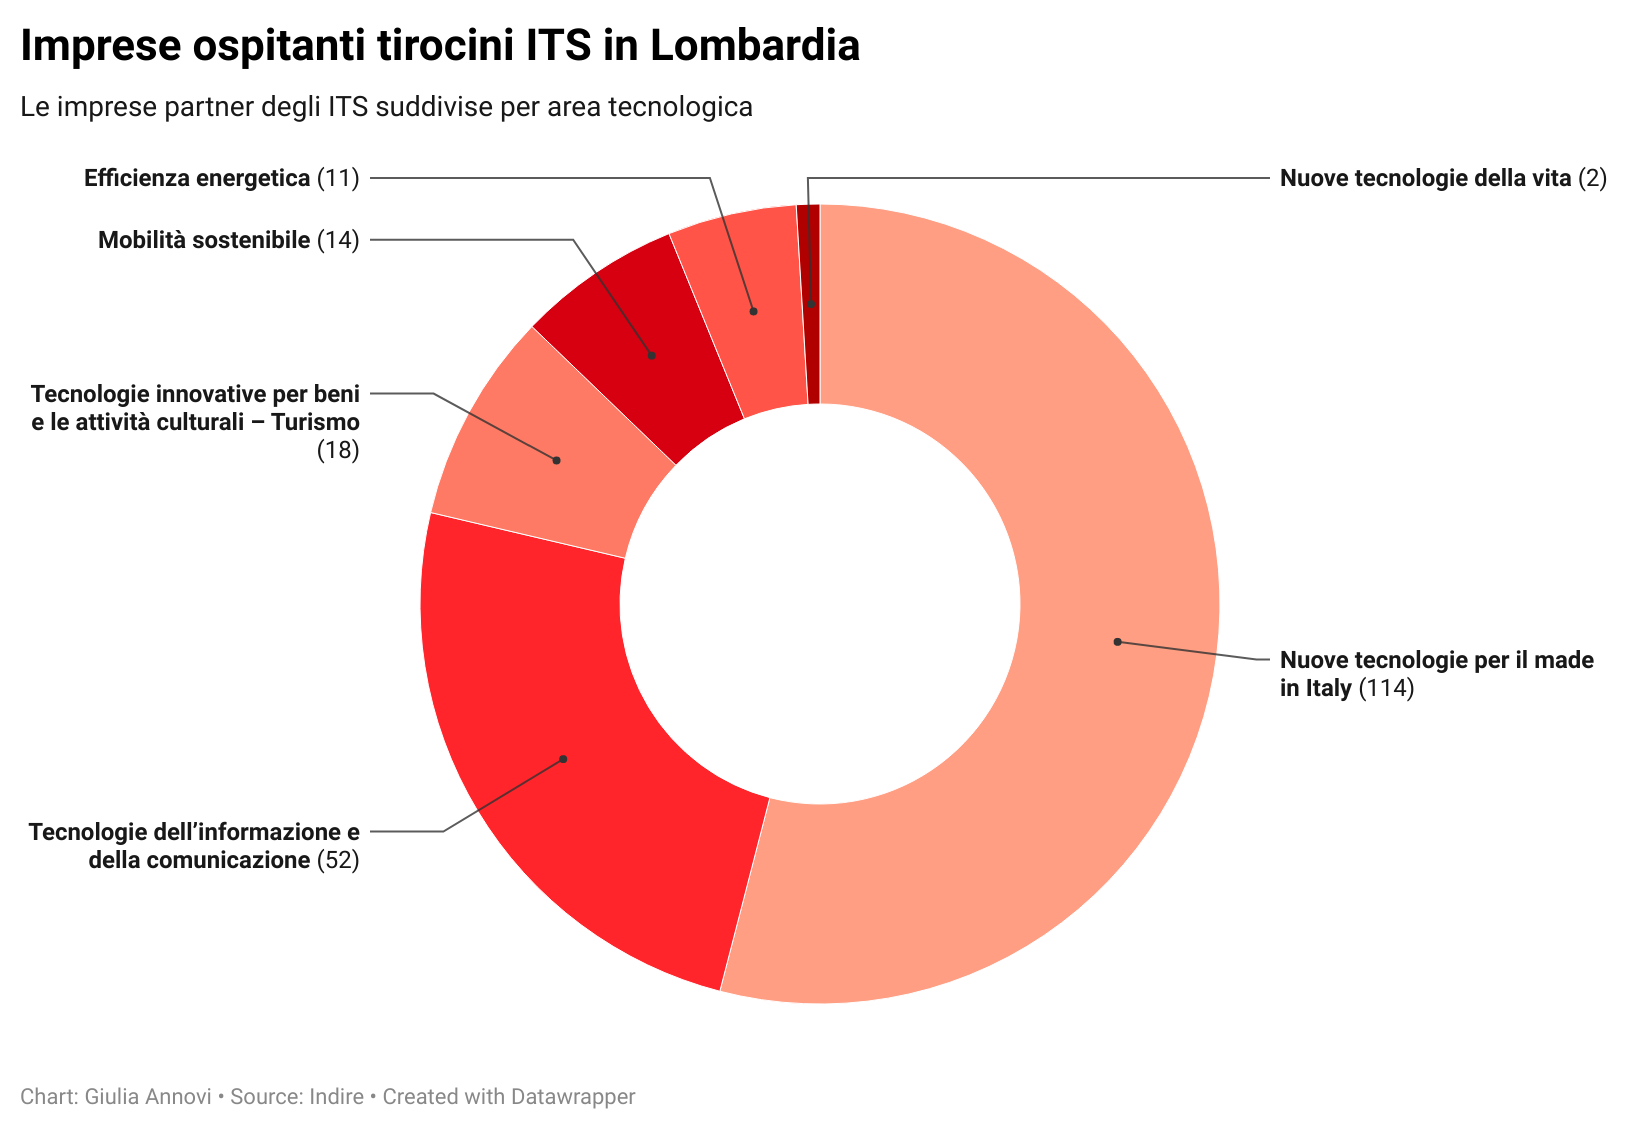 Le imprese con tirocini ITS in Lombardia divisi per area tecnologica